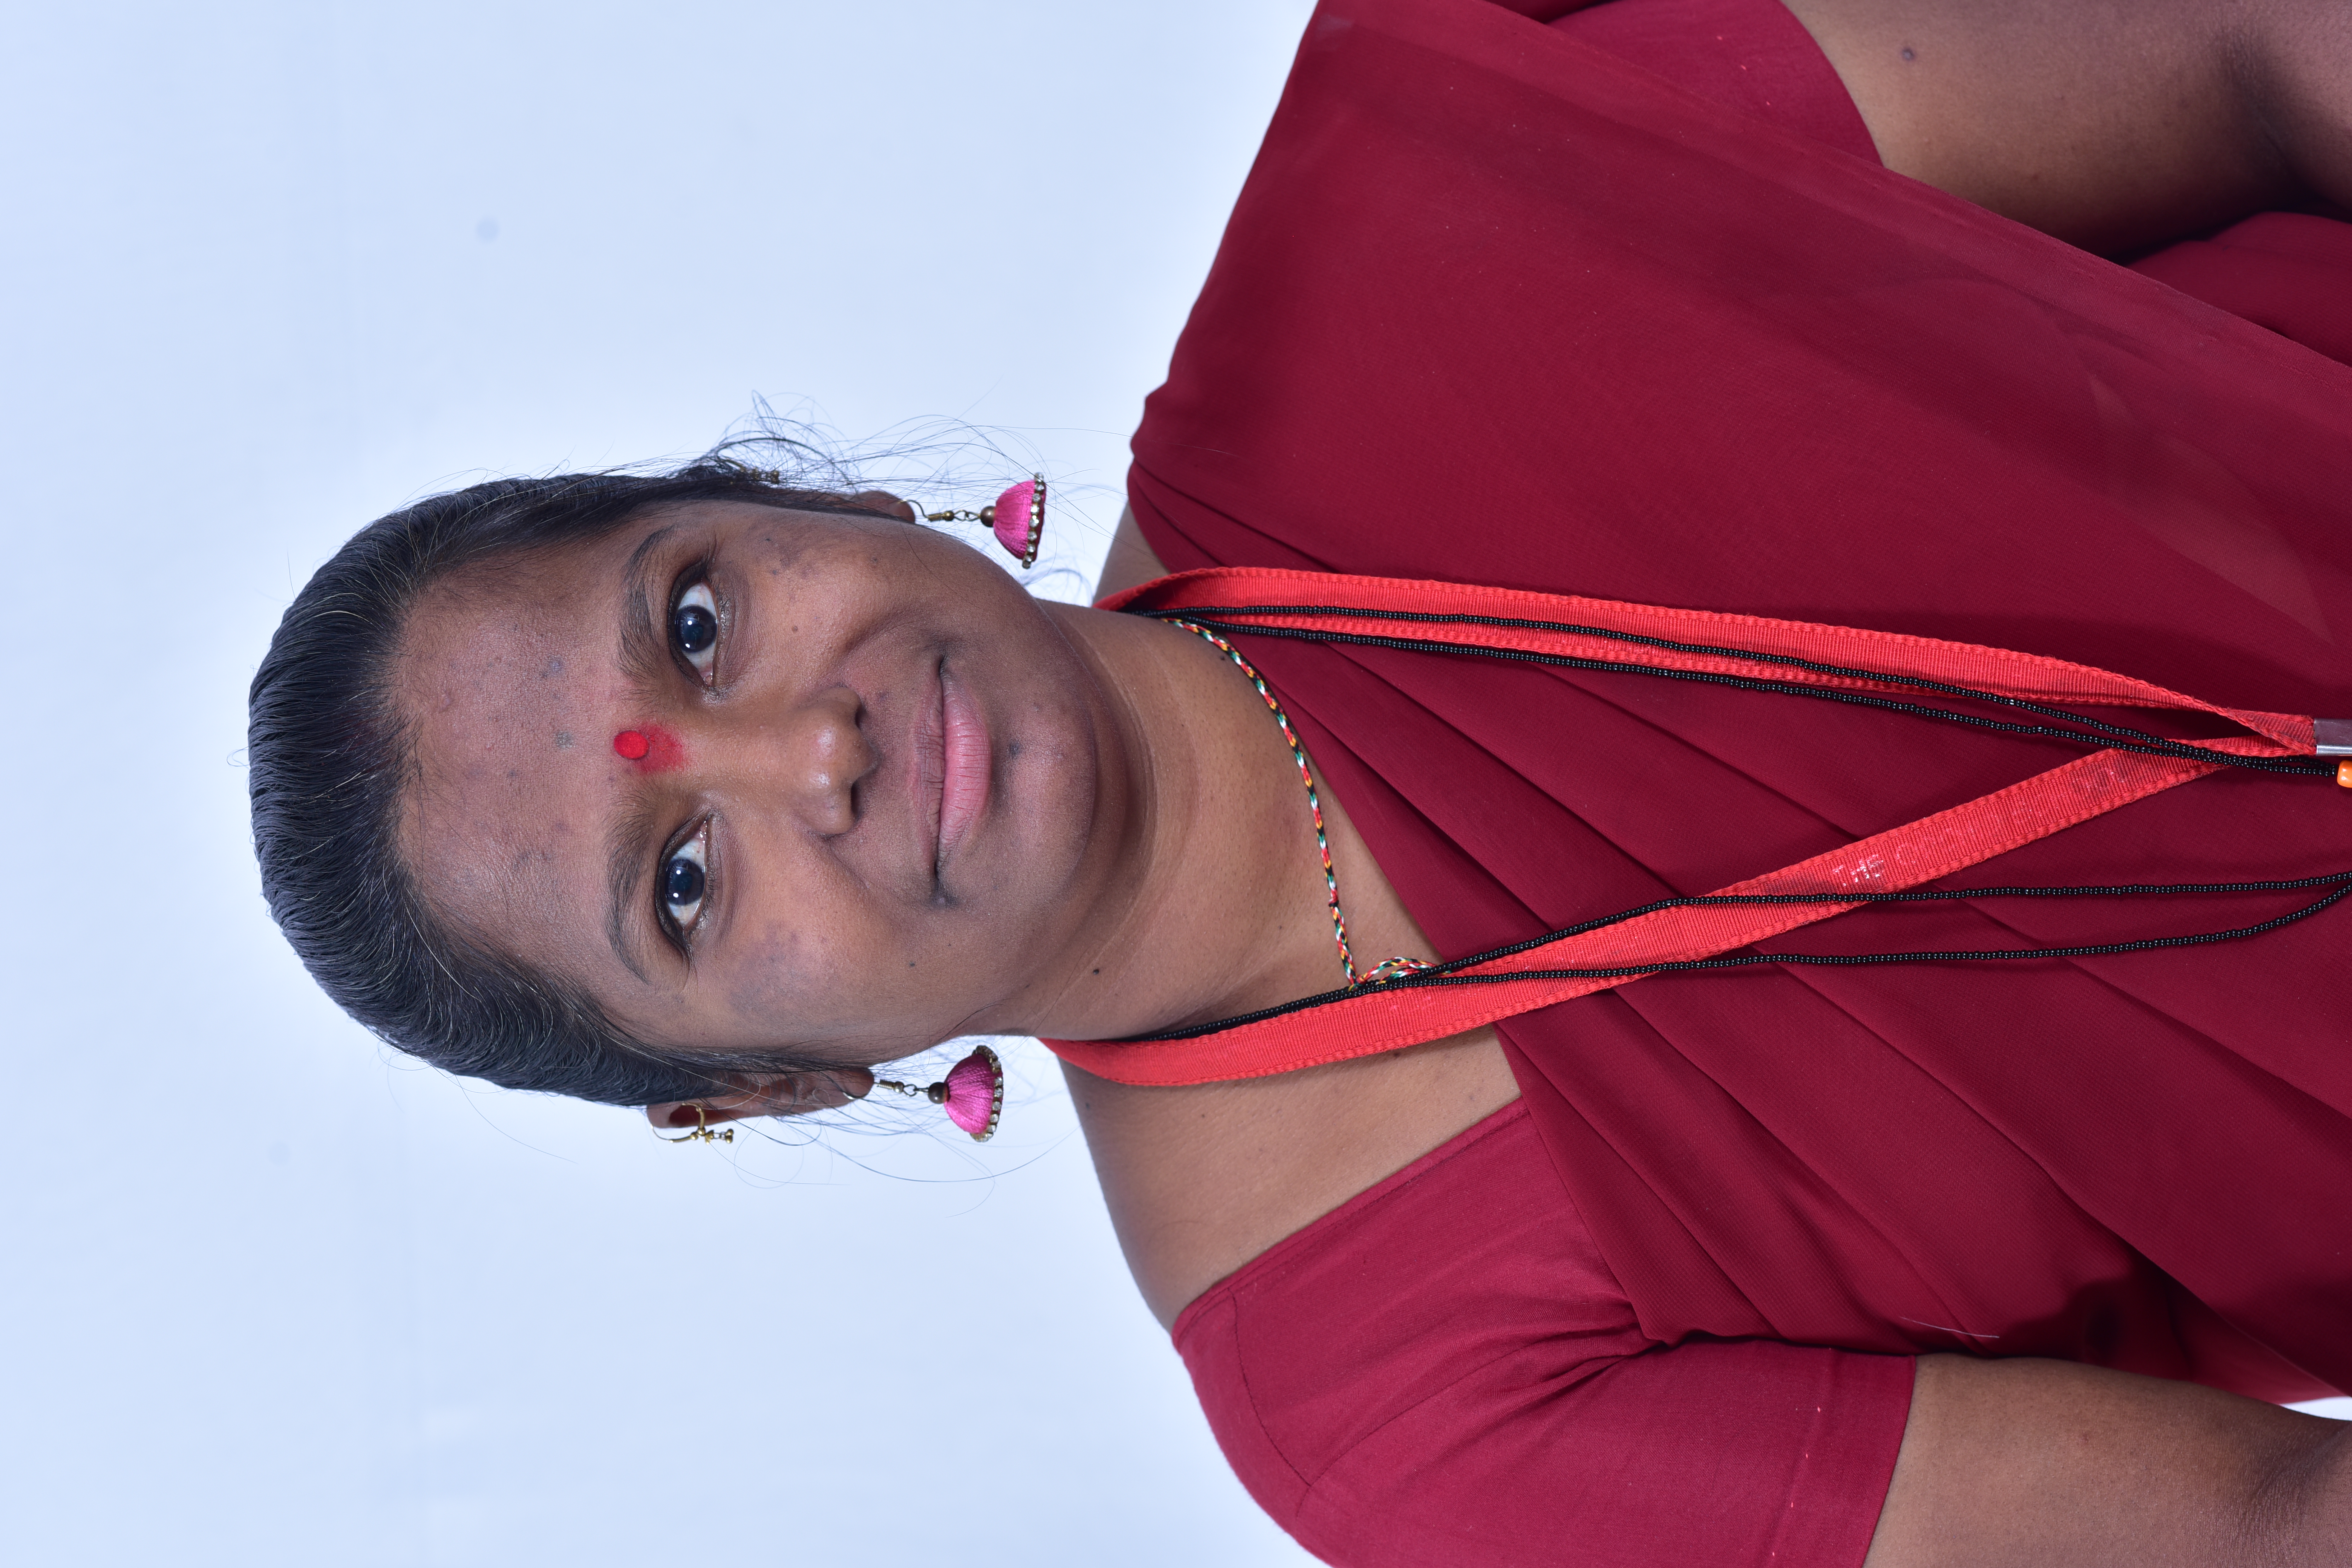 Geeta Dhiradkar